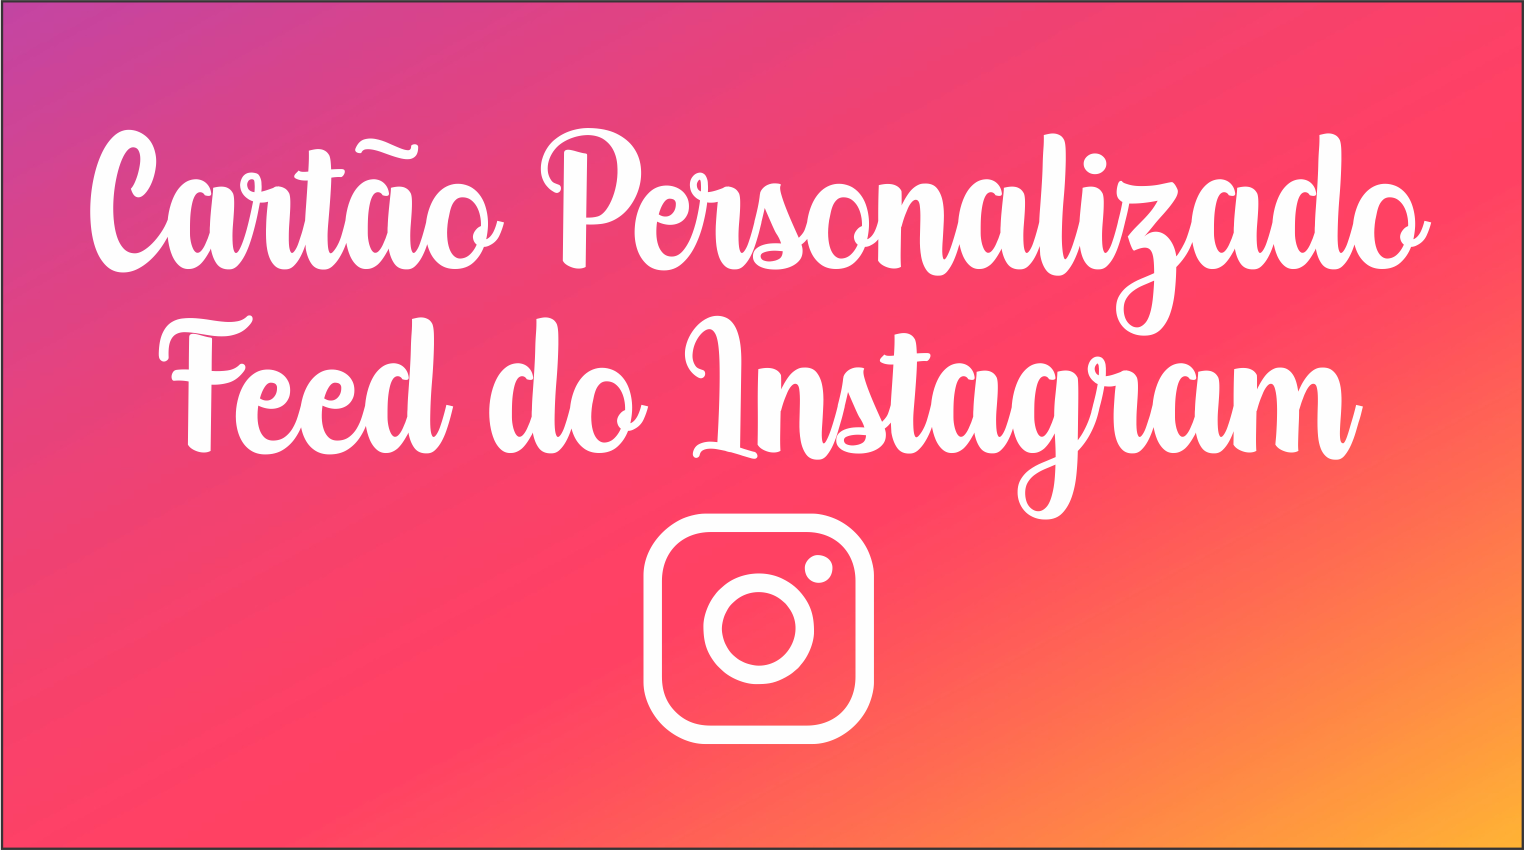 CAPA CARTAO FEED INSTAGRAM - Cartão Feed do Instagram Para Imprimir em Alta Qualidade